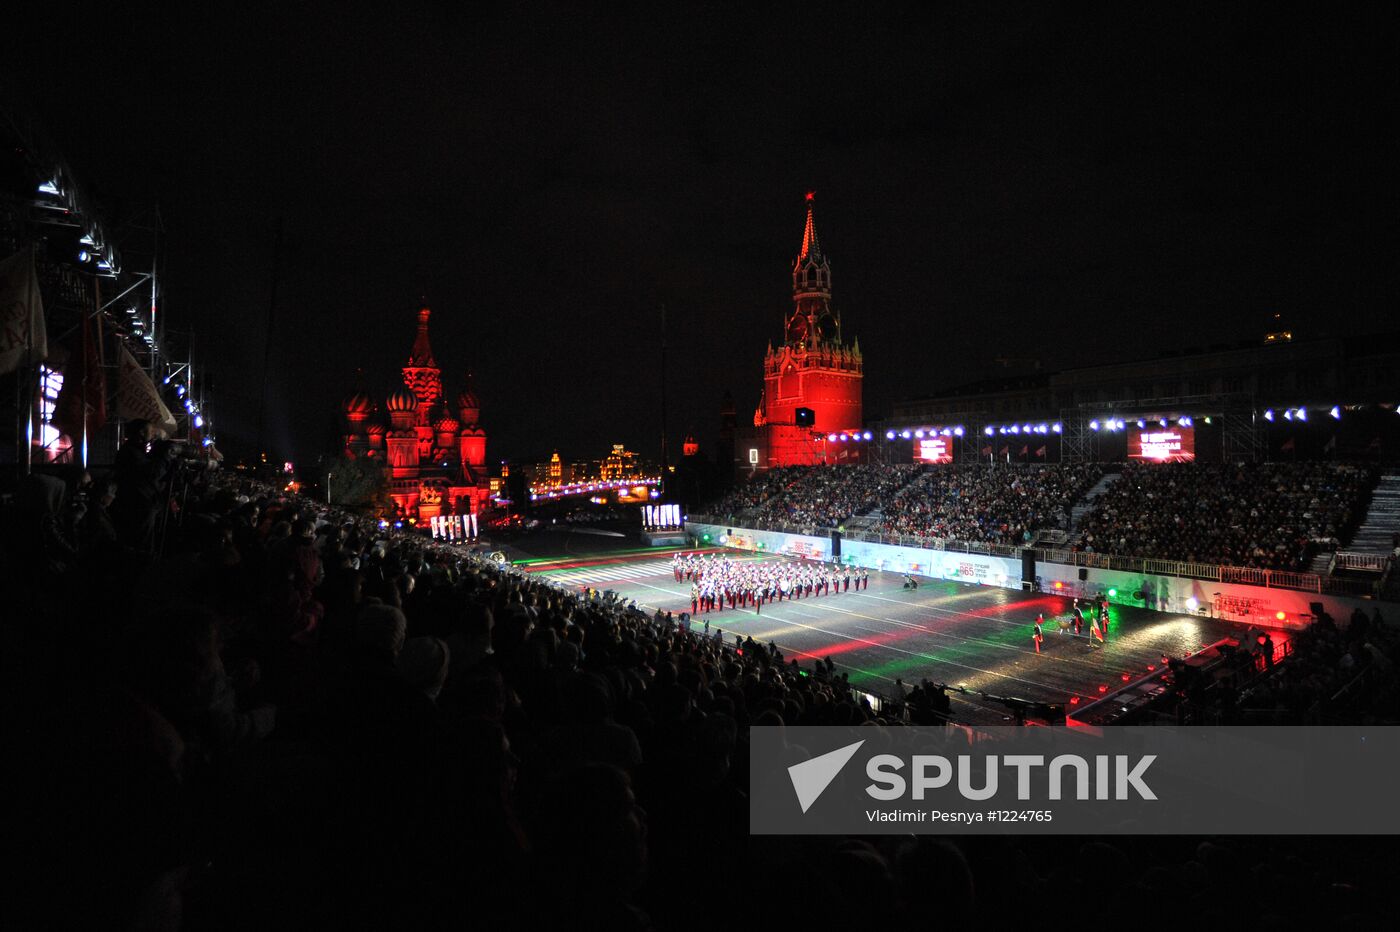 Opening ceremony of Spasskaya Tower 2012 festivalq